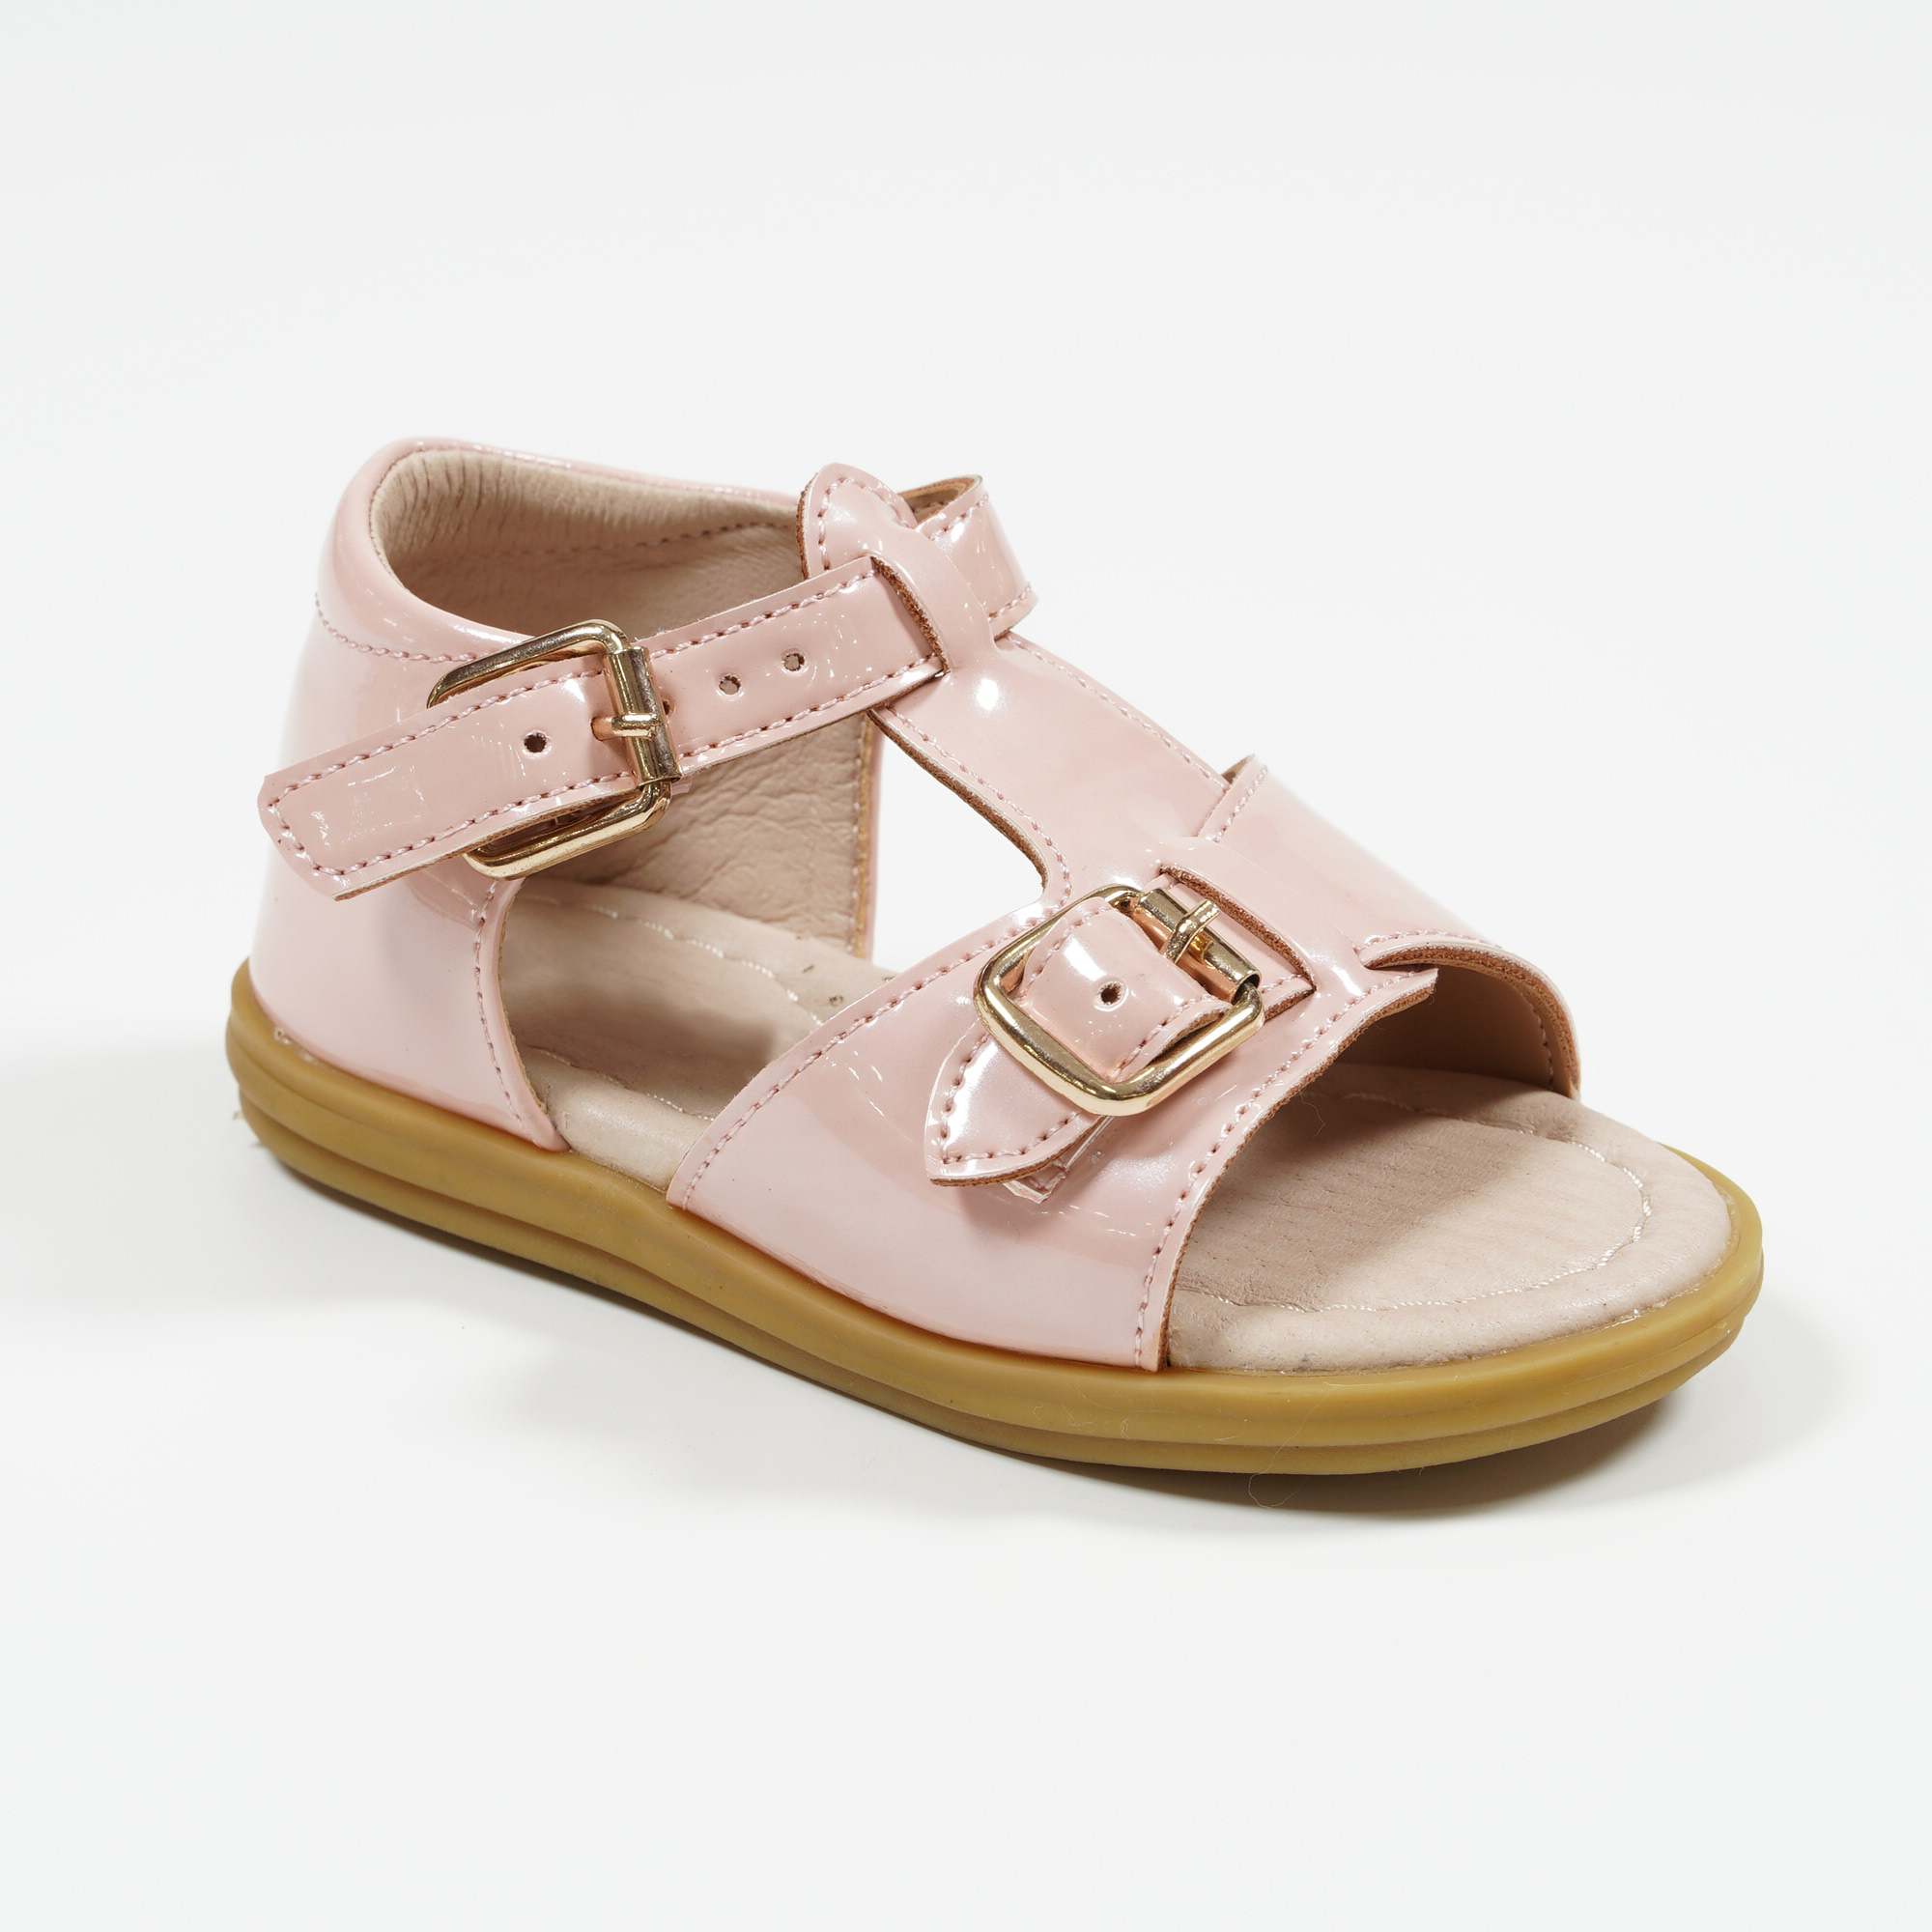 Yidaxing-Double-Buckle-Open-Toe-Sandals-OEM-Kids-Shoe-YDXLS1829J-1-pink